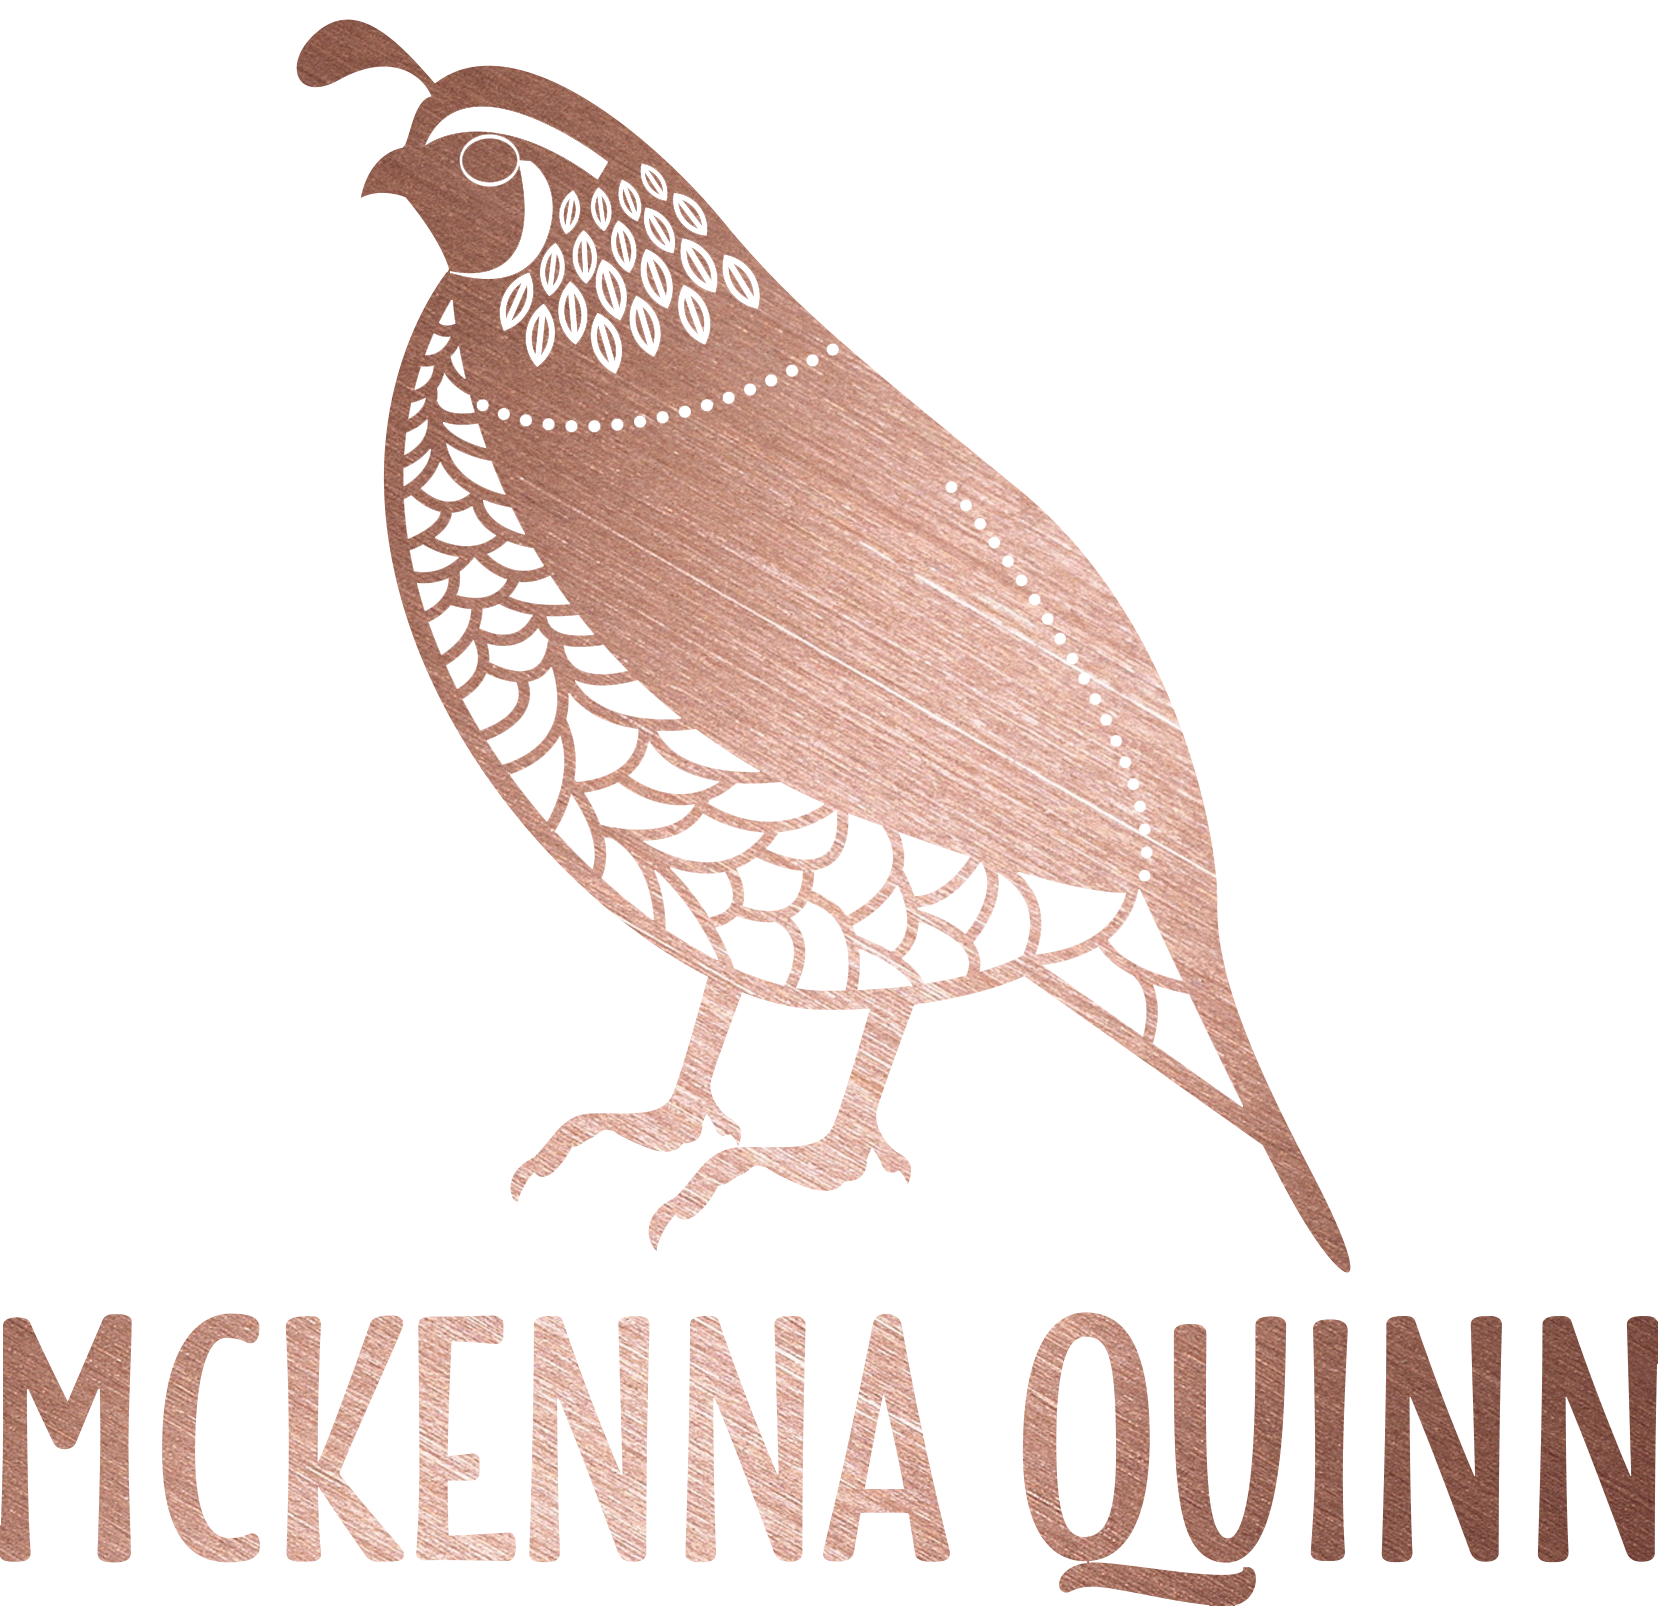 McKenna Quinn